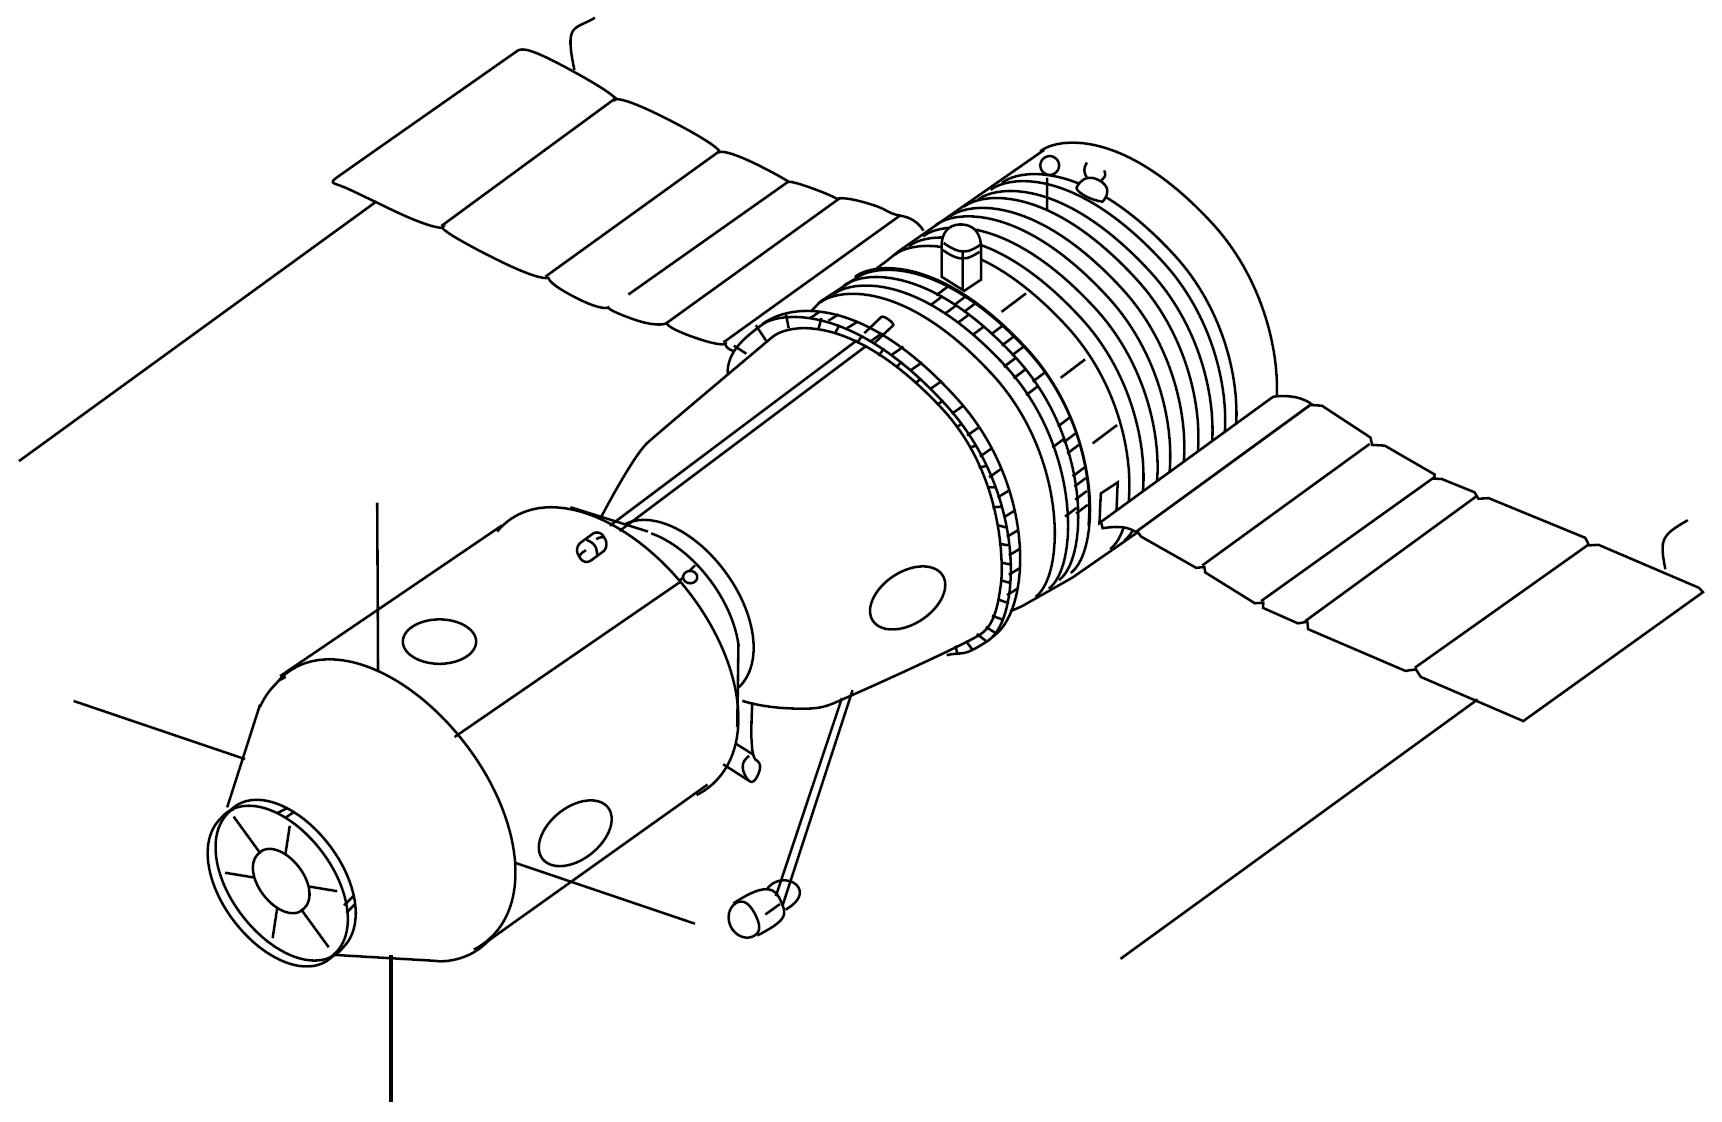 Рисунок спутника в космосе. Космический корабль Союз «Союз» 7к-ок. МКС вид сбоку чертеж. Летательные межконтинентальные космические аппараты. Космический аппарат Союз чертеж.